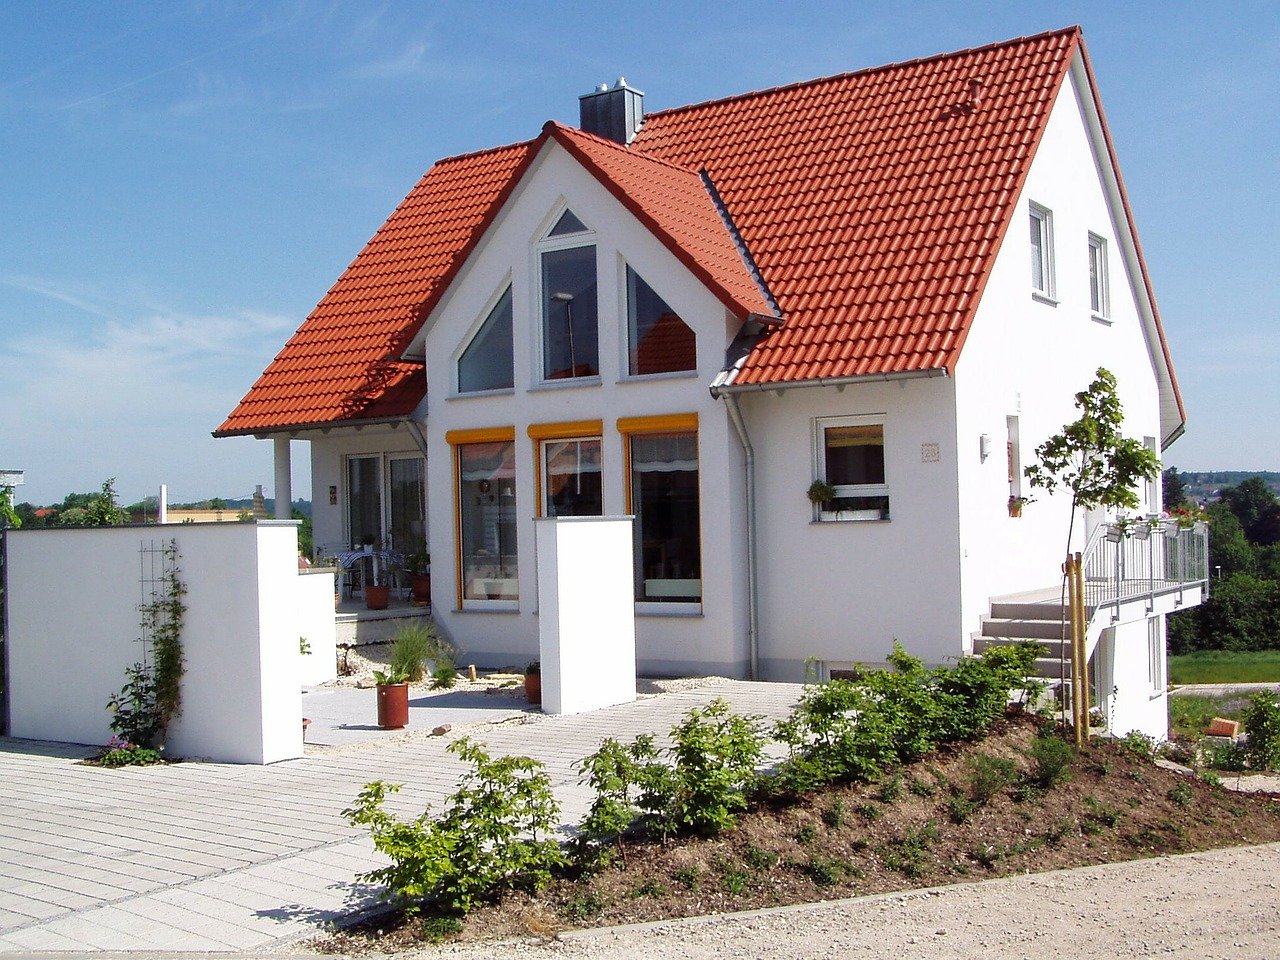 Eigenheim Haus Wohnhaus Neubau